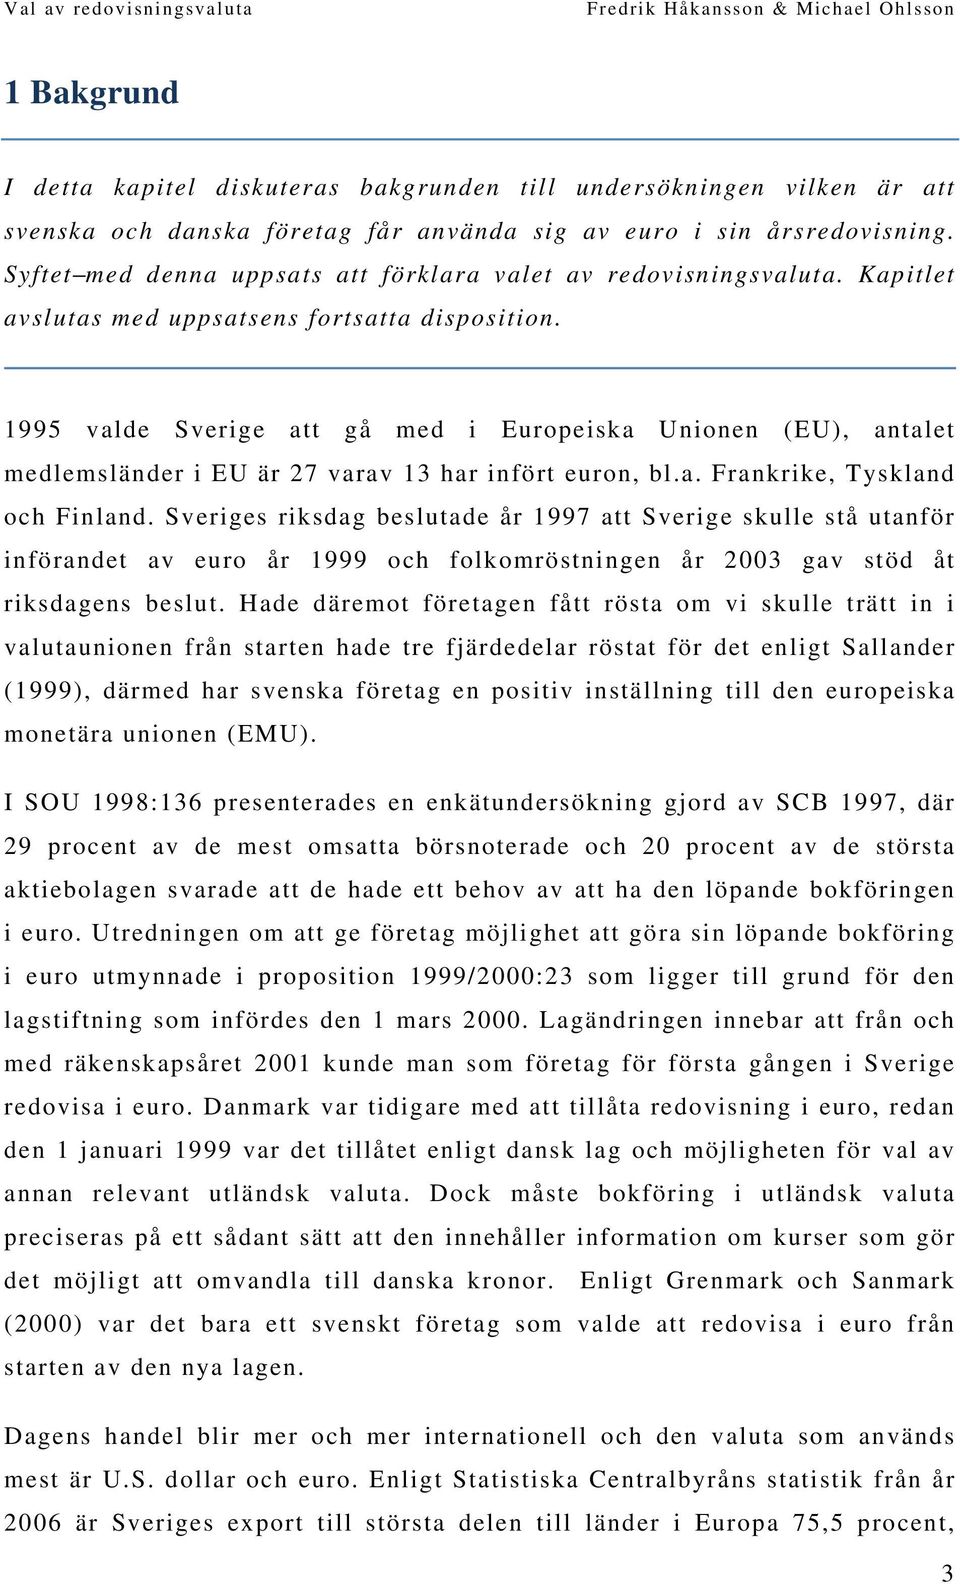 1995 valde Sverige att gå med i Europeiska Unionen (EU), antalet medlemsländer i EU är 27 varav 13 har infört euron, bl.a. Frankrike, Tyskland och Finland.